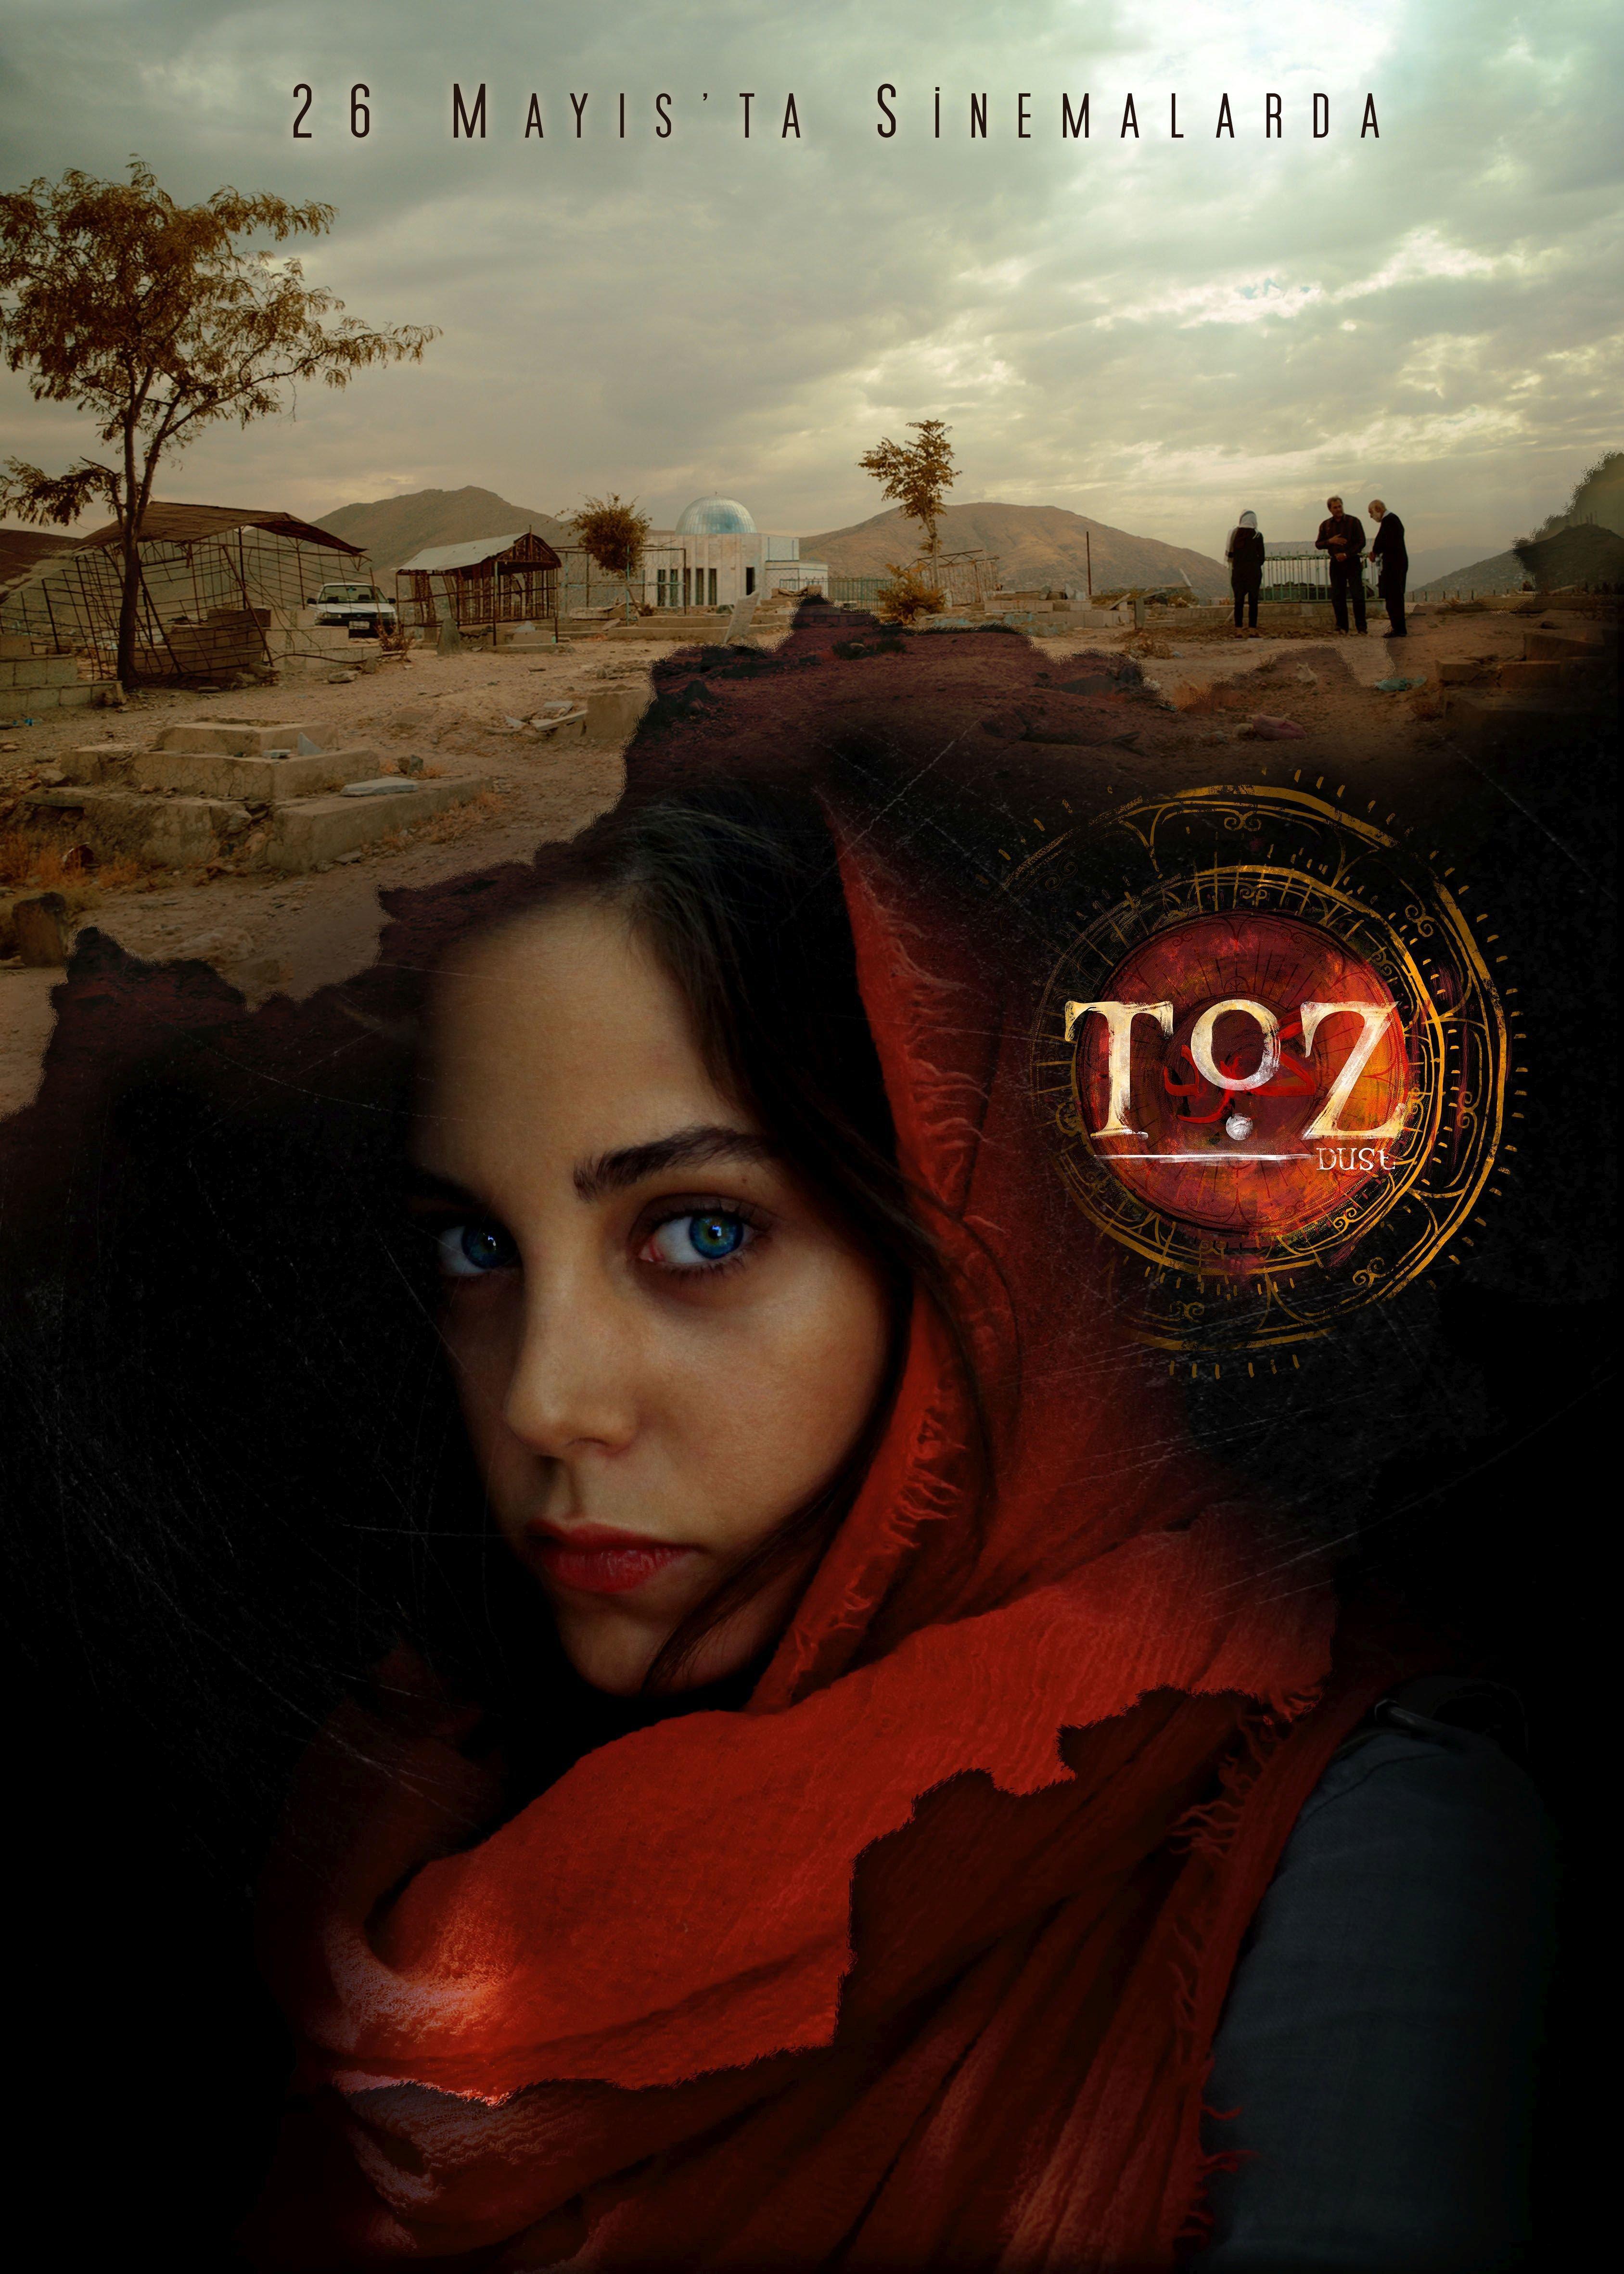 Afganistanda çekilen Toz filmi vizyona giriyor